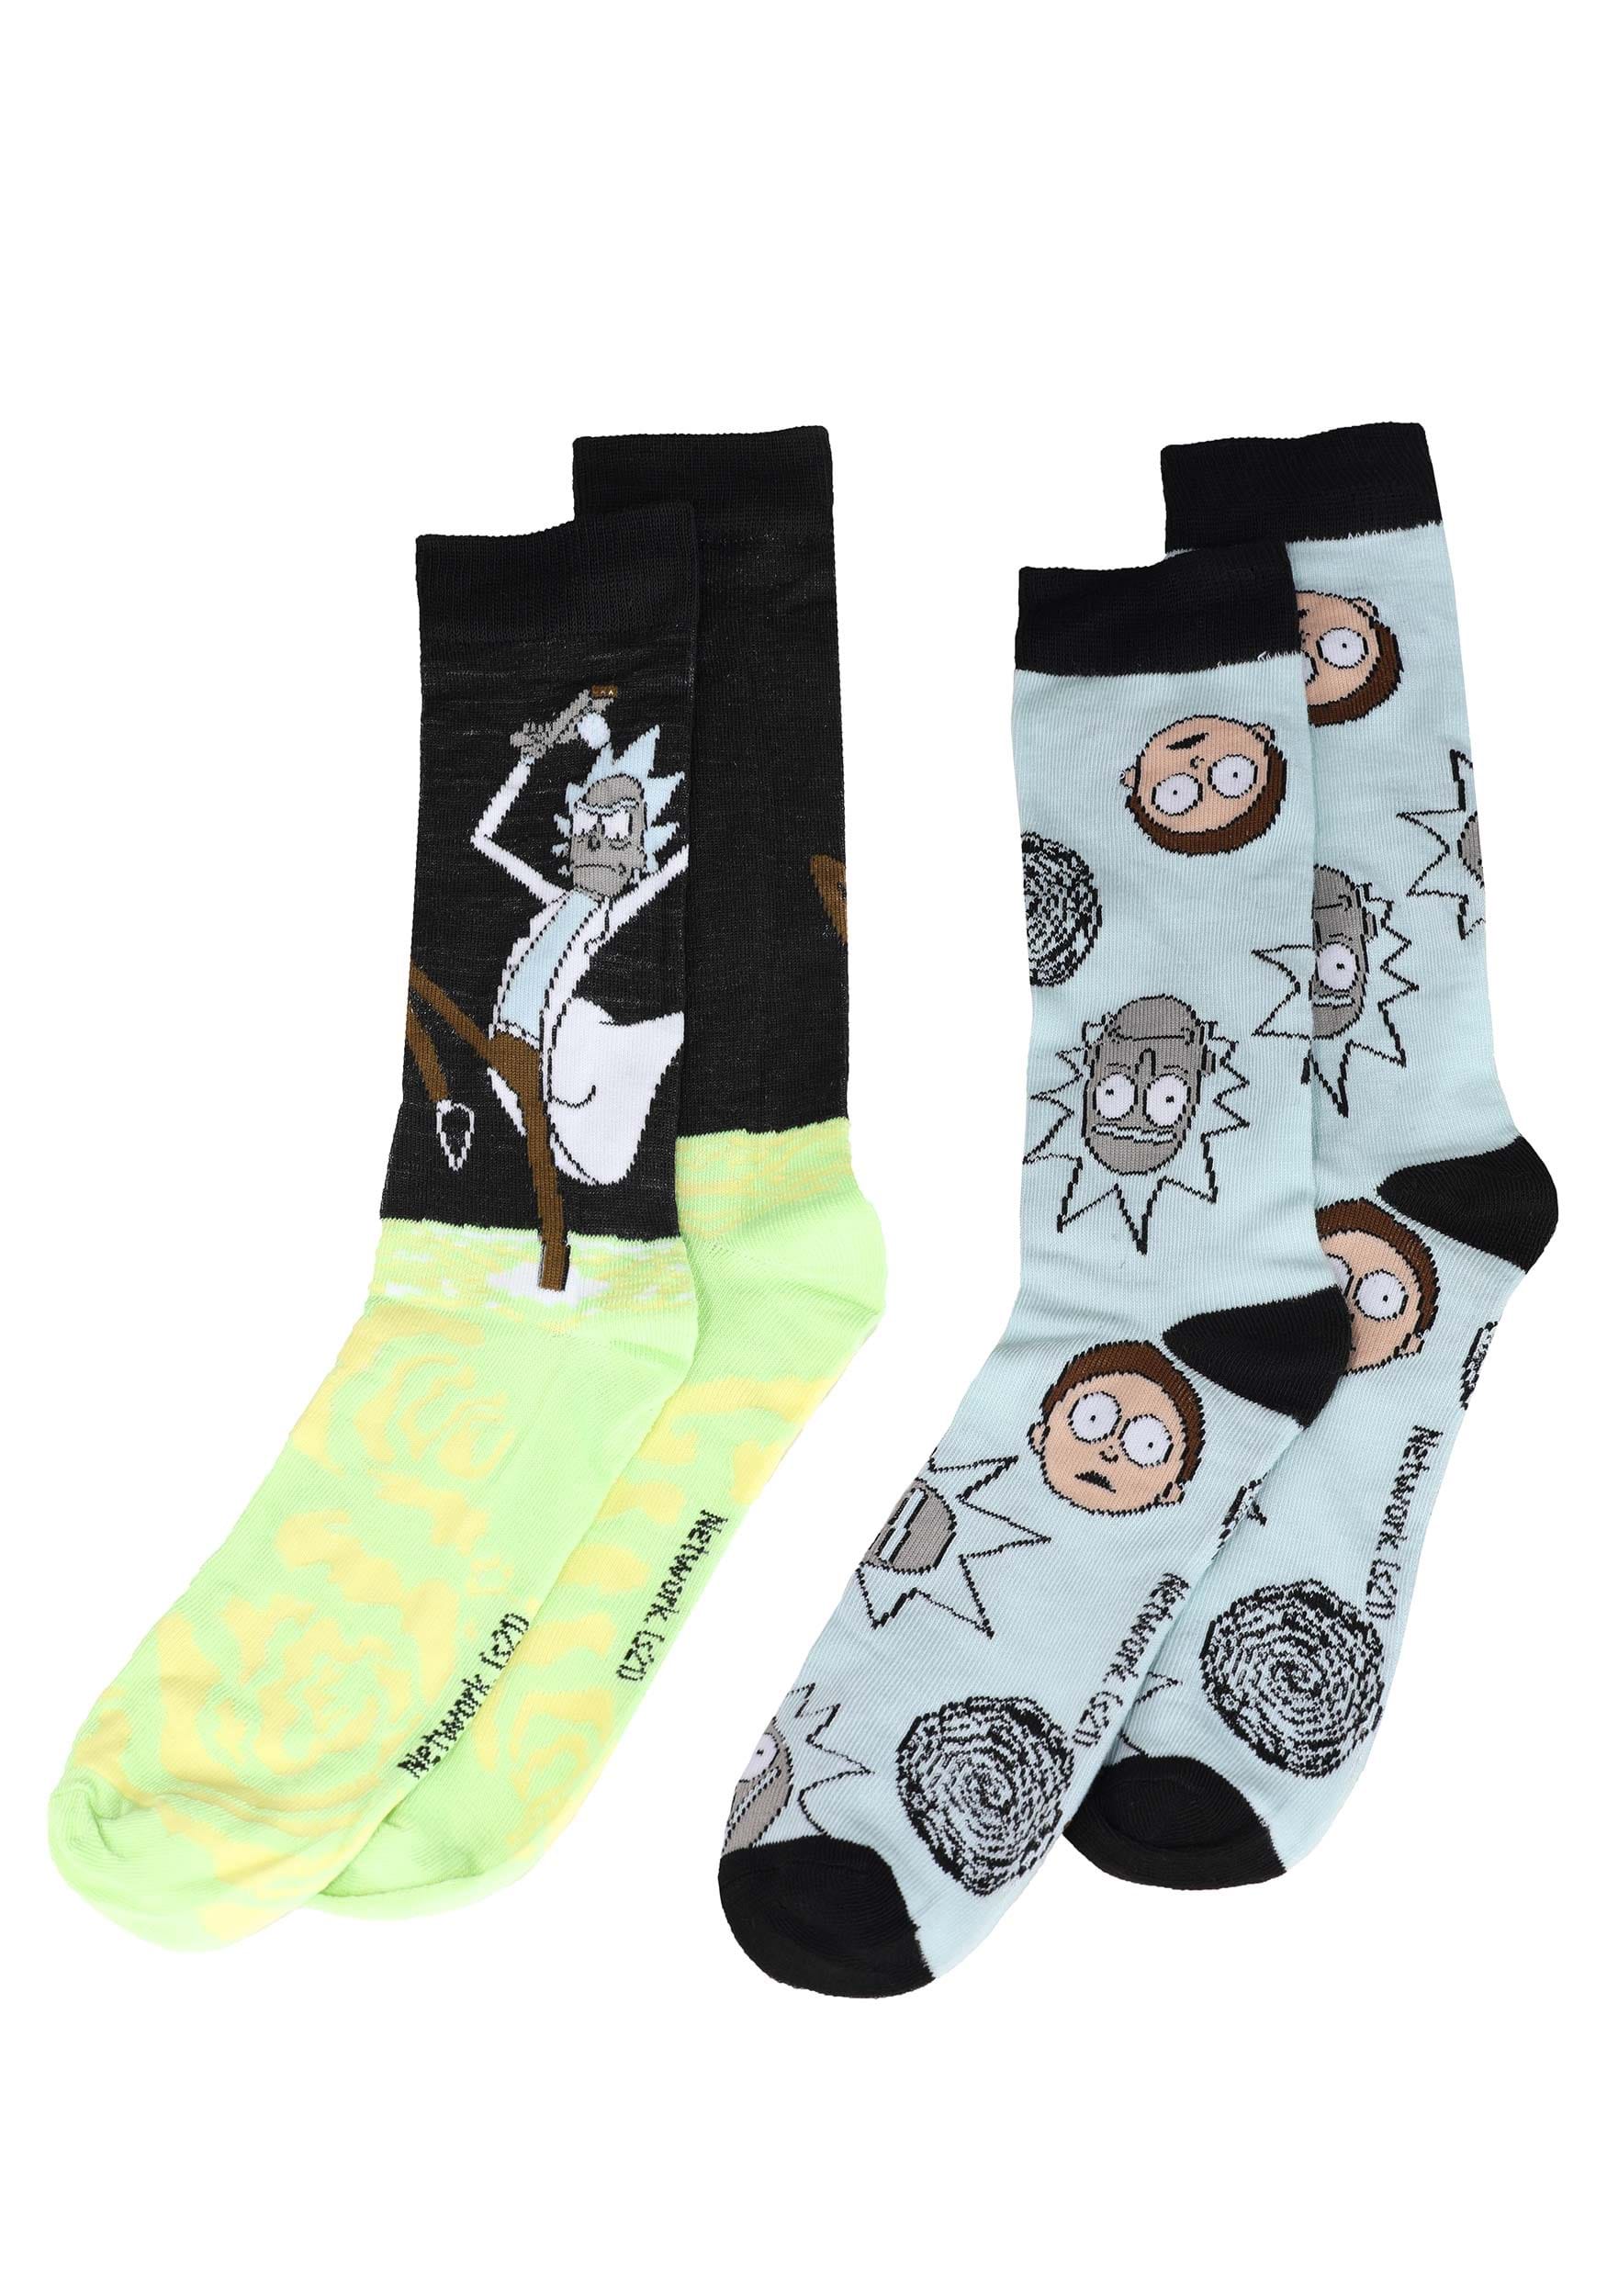 Rick and Morty 2 Pack Socks for Men